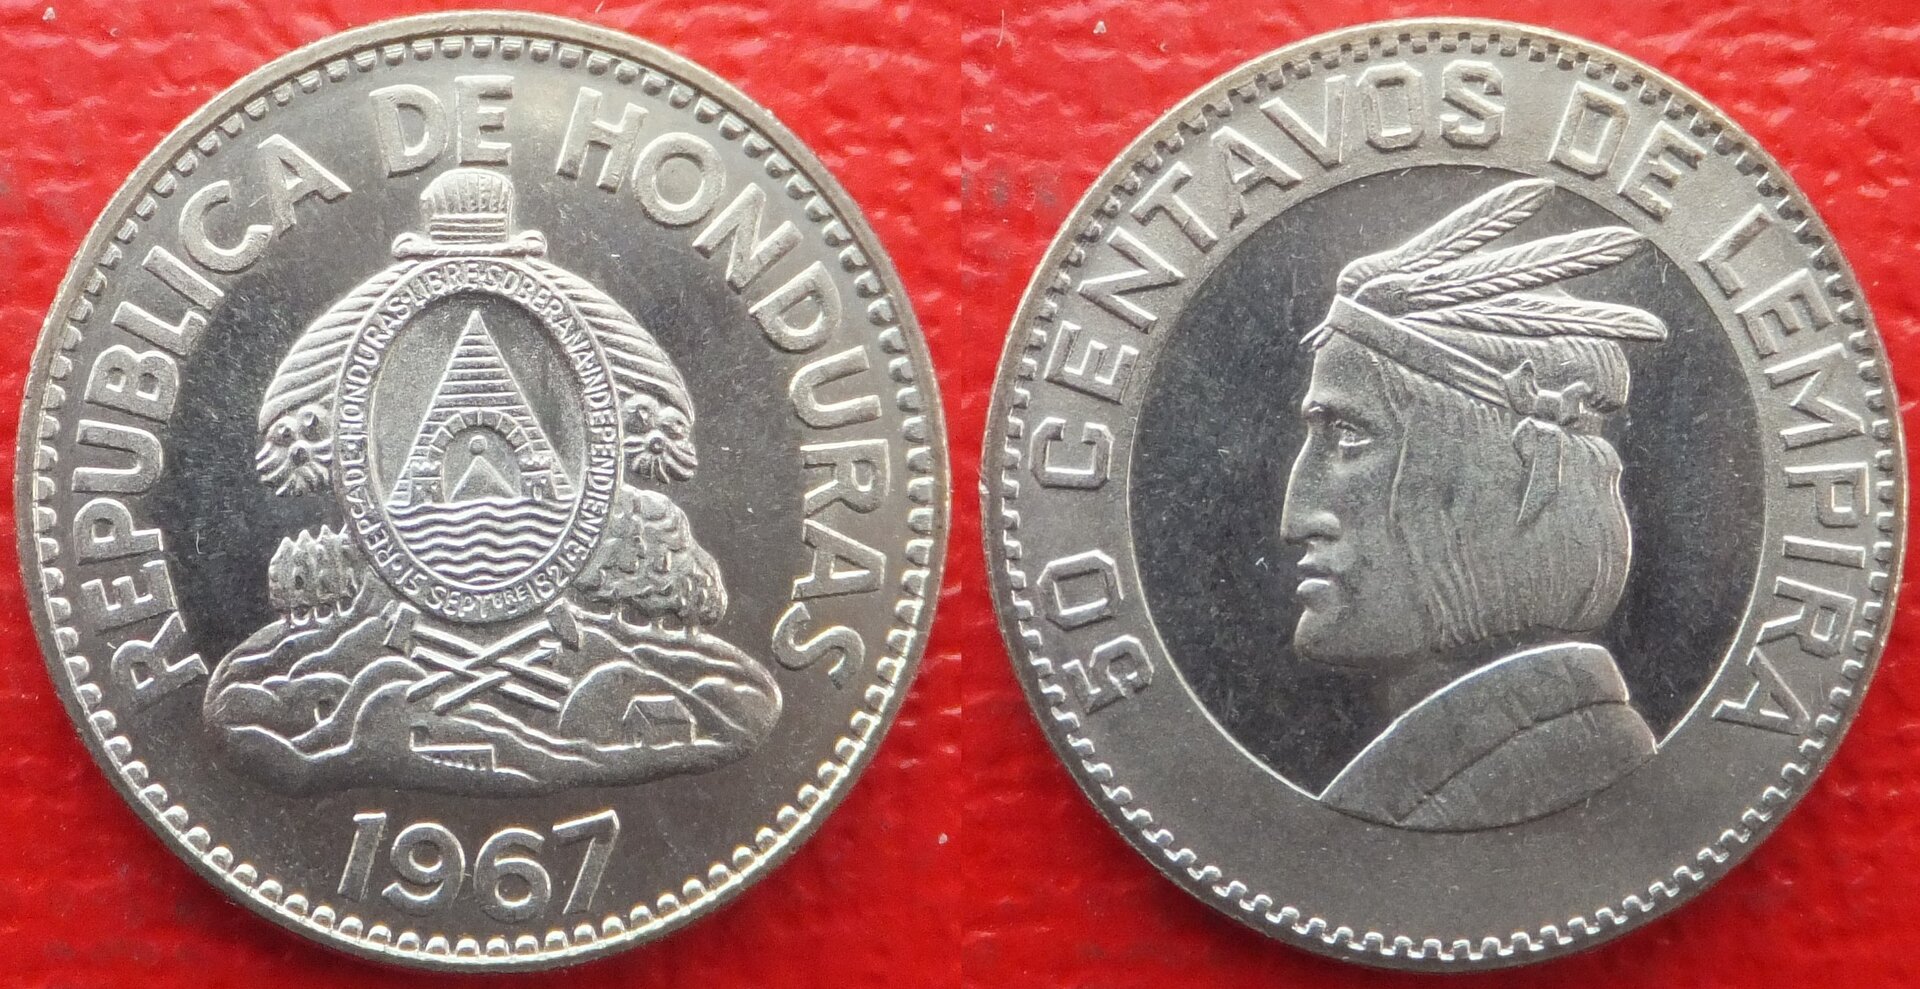 Honduras 50 centavos 1967 (3).jpg